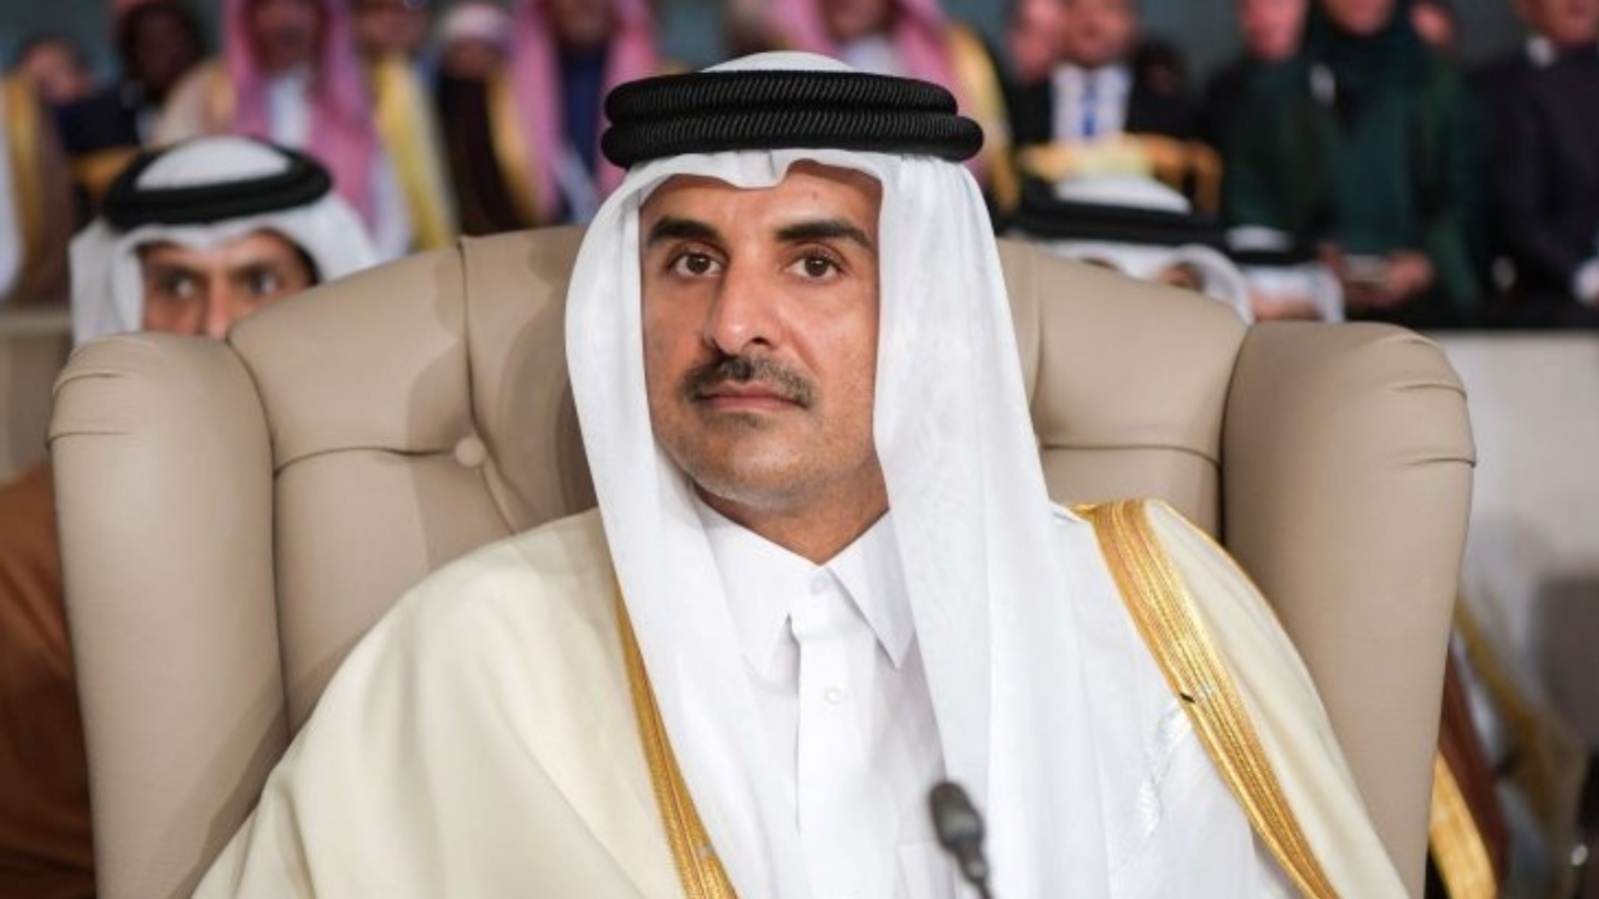 أمير قطر الشيخ تميم بن حمد آل ثارني يبحث في بغداد غدا الخميس 15 يونيو تطوير العلاقات الاستثمارية والتعاون لتفكيك أزمات المنطقة (تويتر)